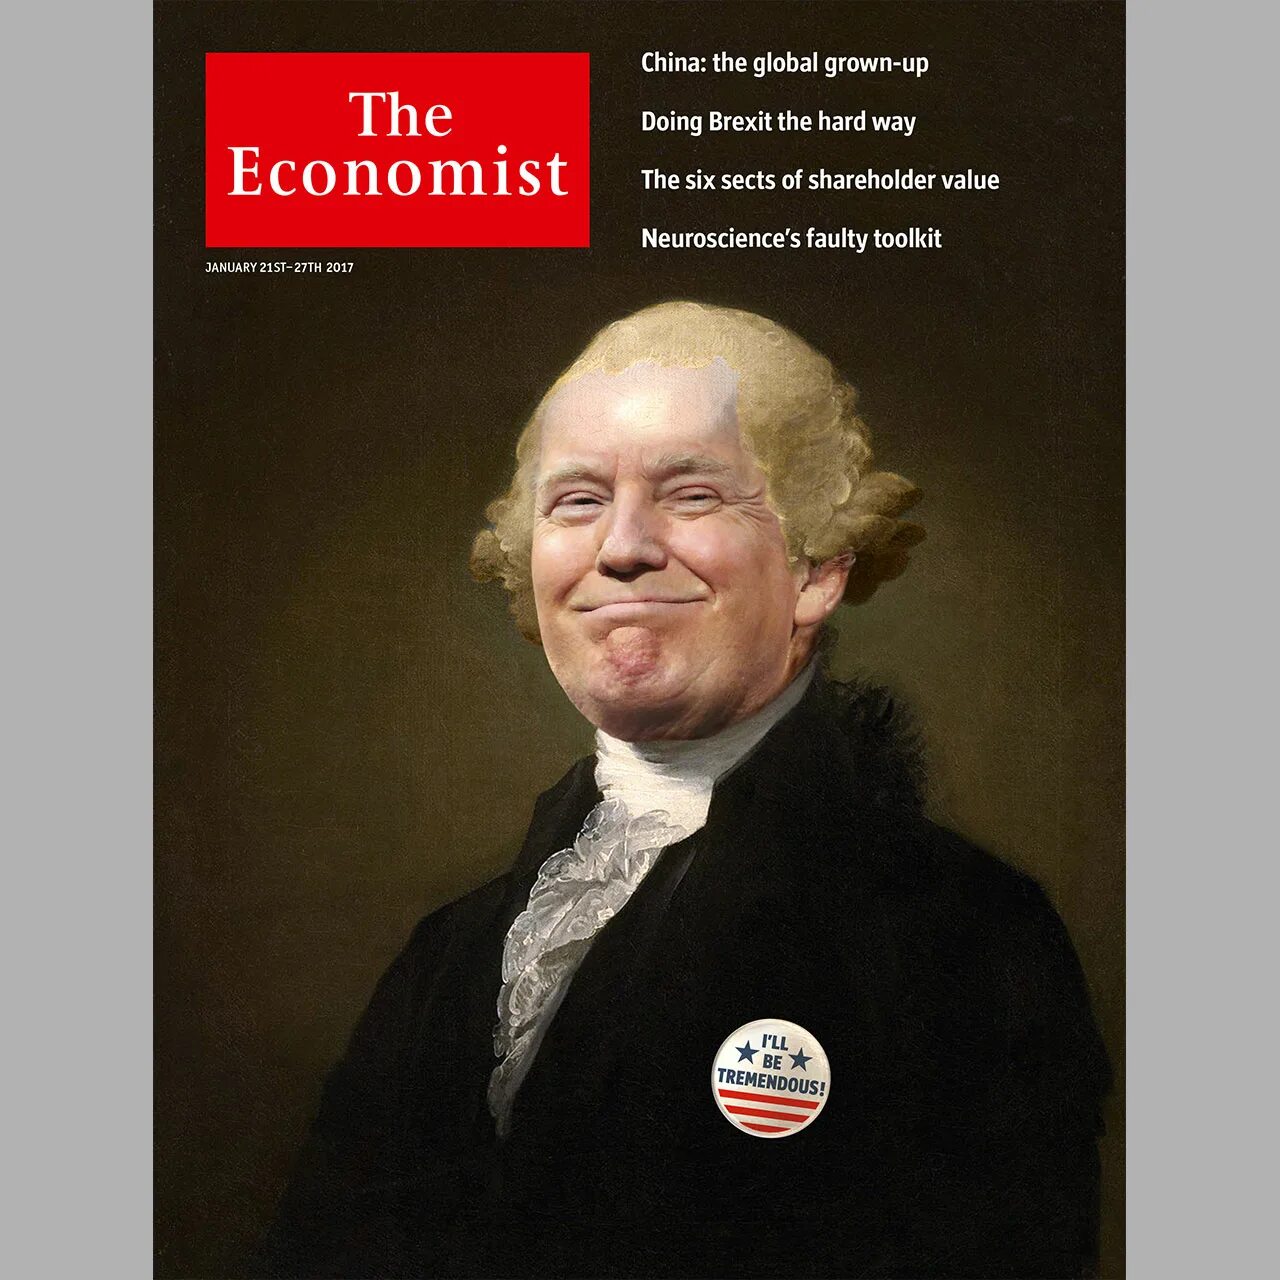 Последний журнал экономист. The Economist. Обложка экономист. Журнал the Economist. Обложка журнала the Economist.